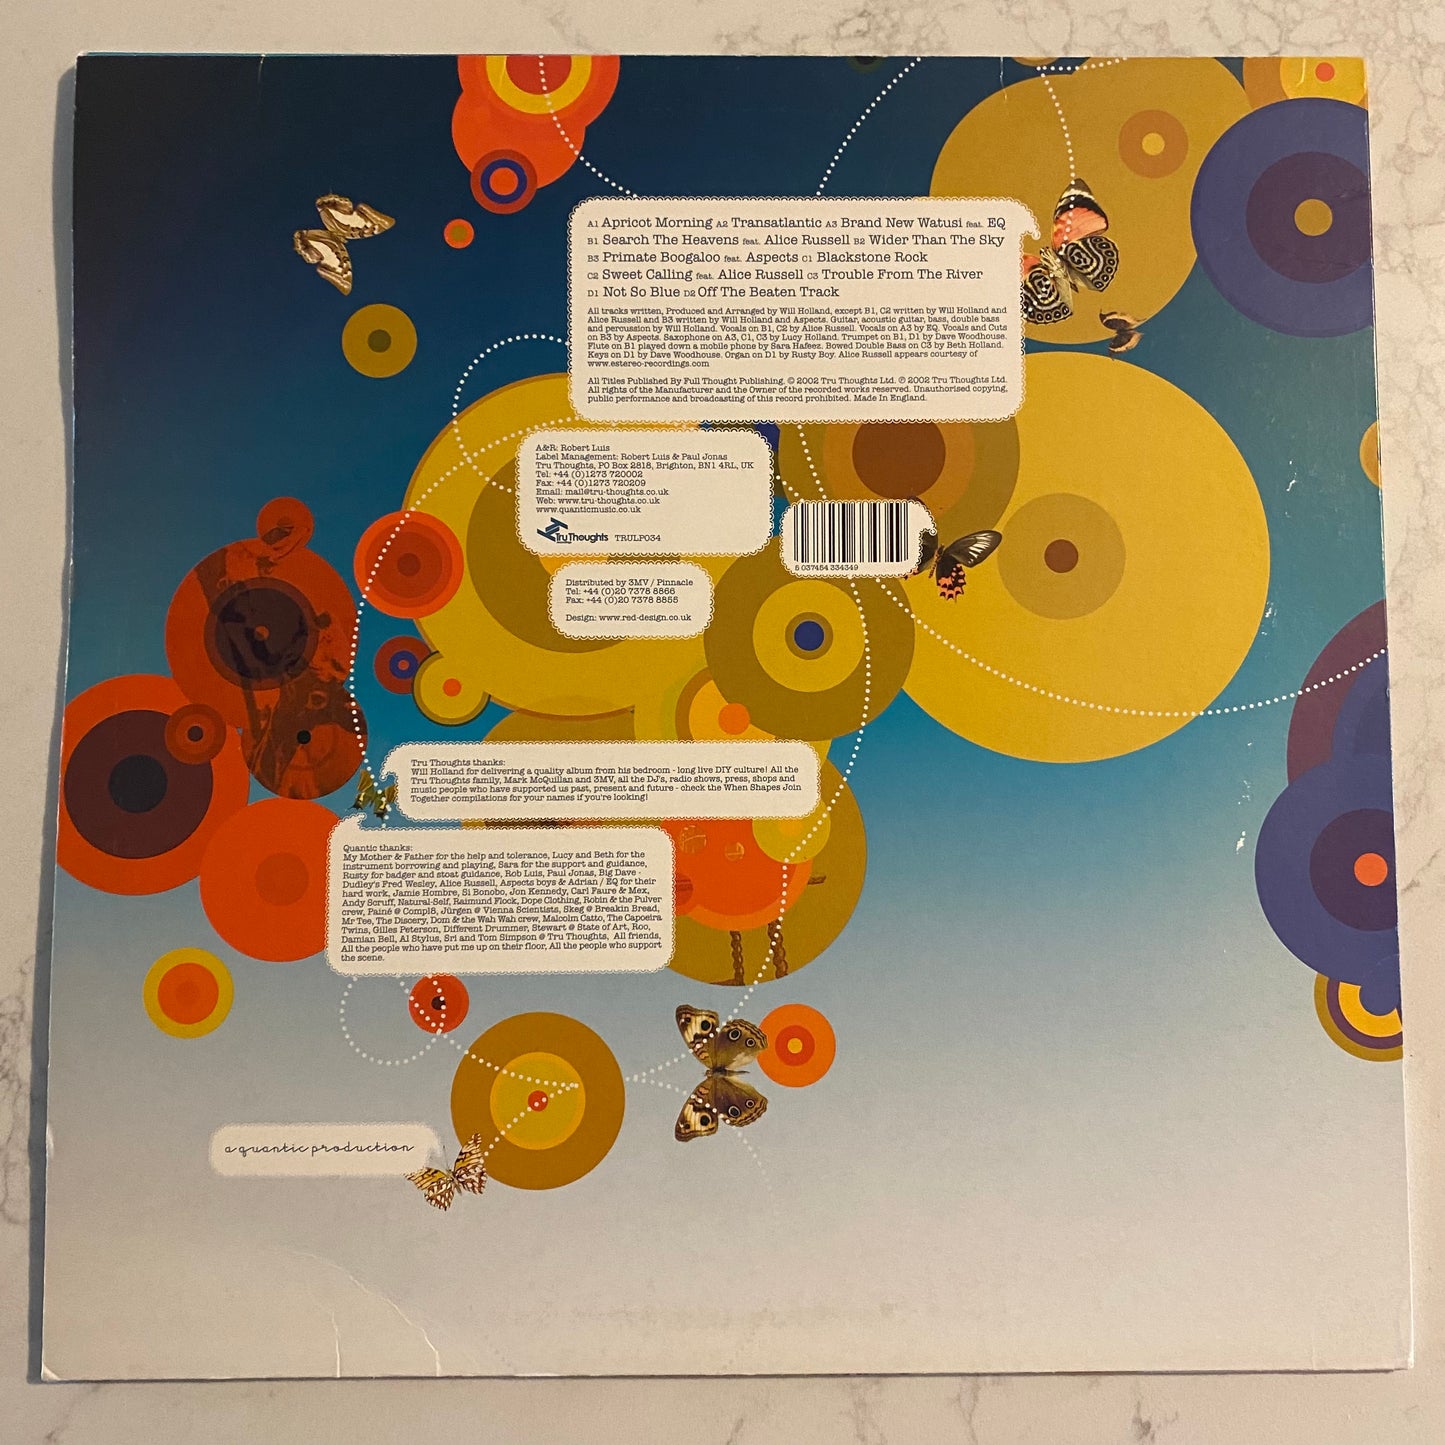 Quantic - Apricot Morning (2xLP, Album)